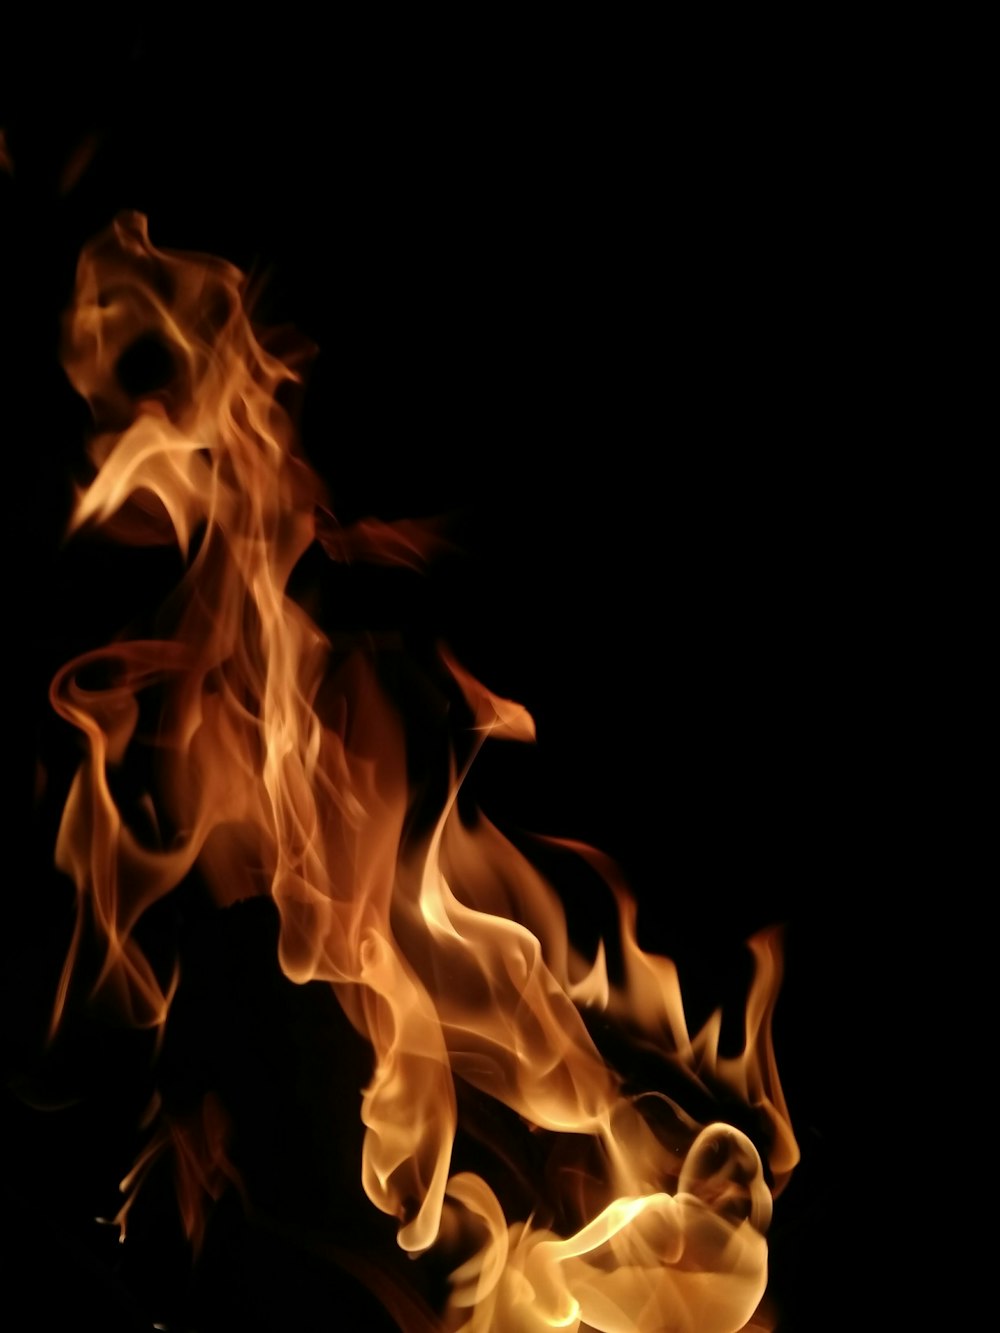 Fotografia a fuoco superficiale del fuoco